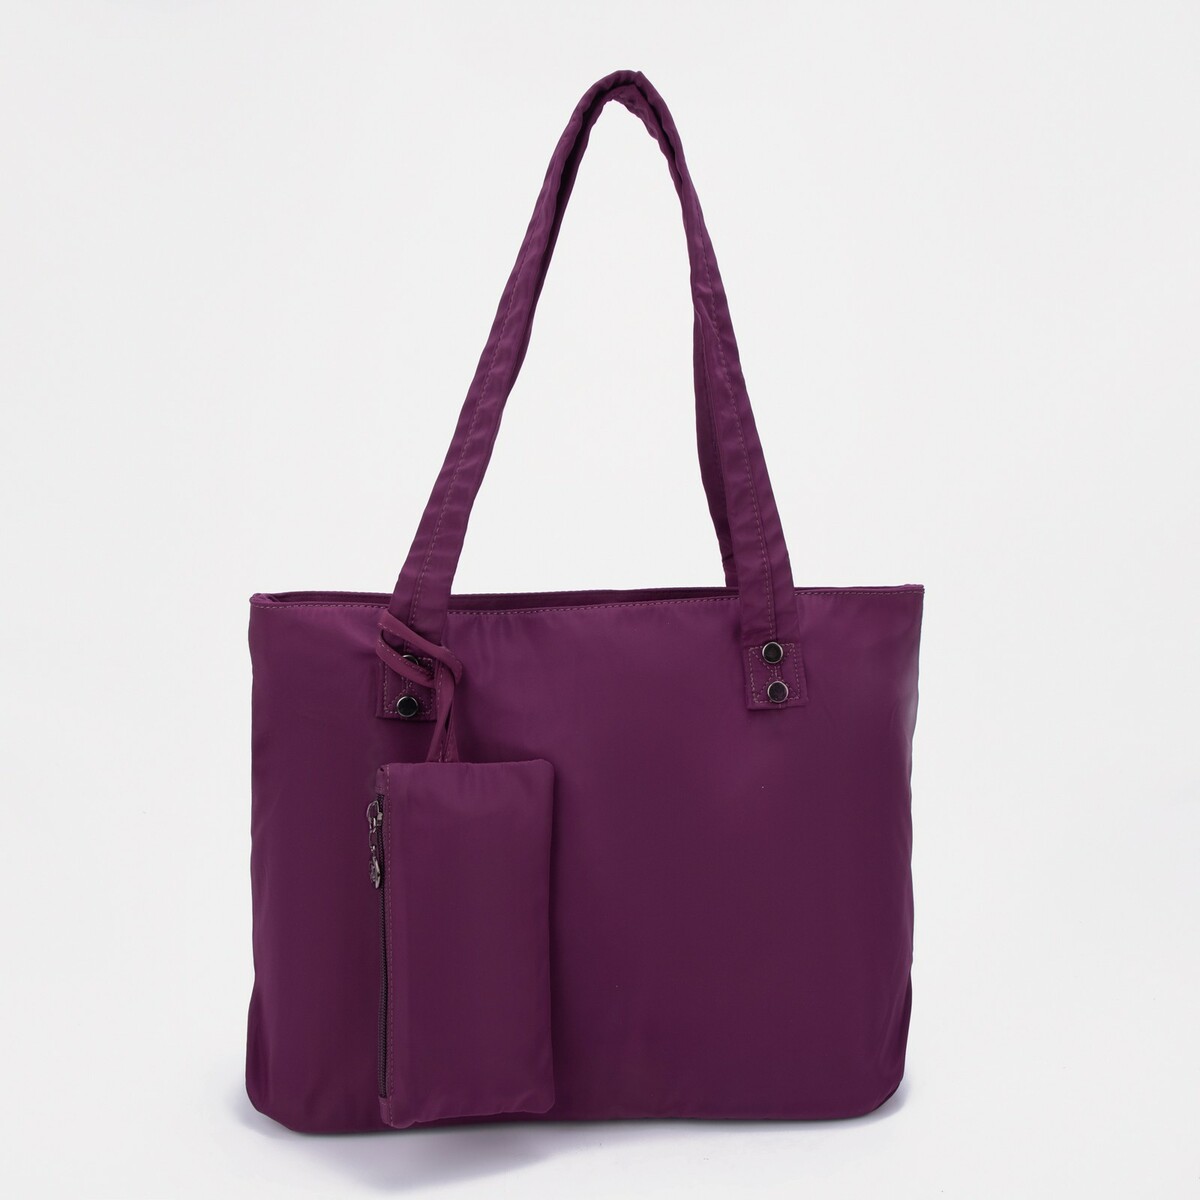 Сумка-тоут на молнии, цвет фиолетовый сумка для йоги sangh 48×25×18 см фиолетовый